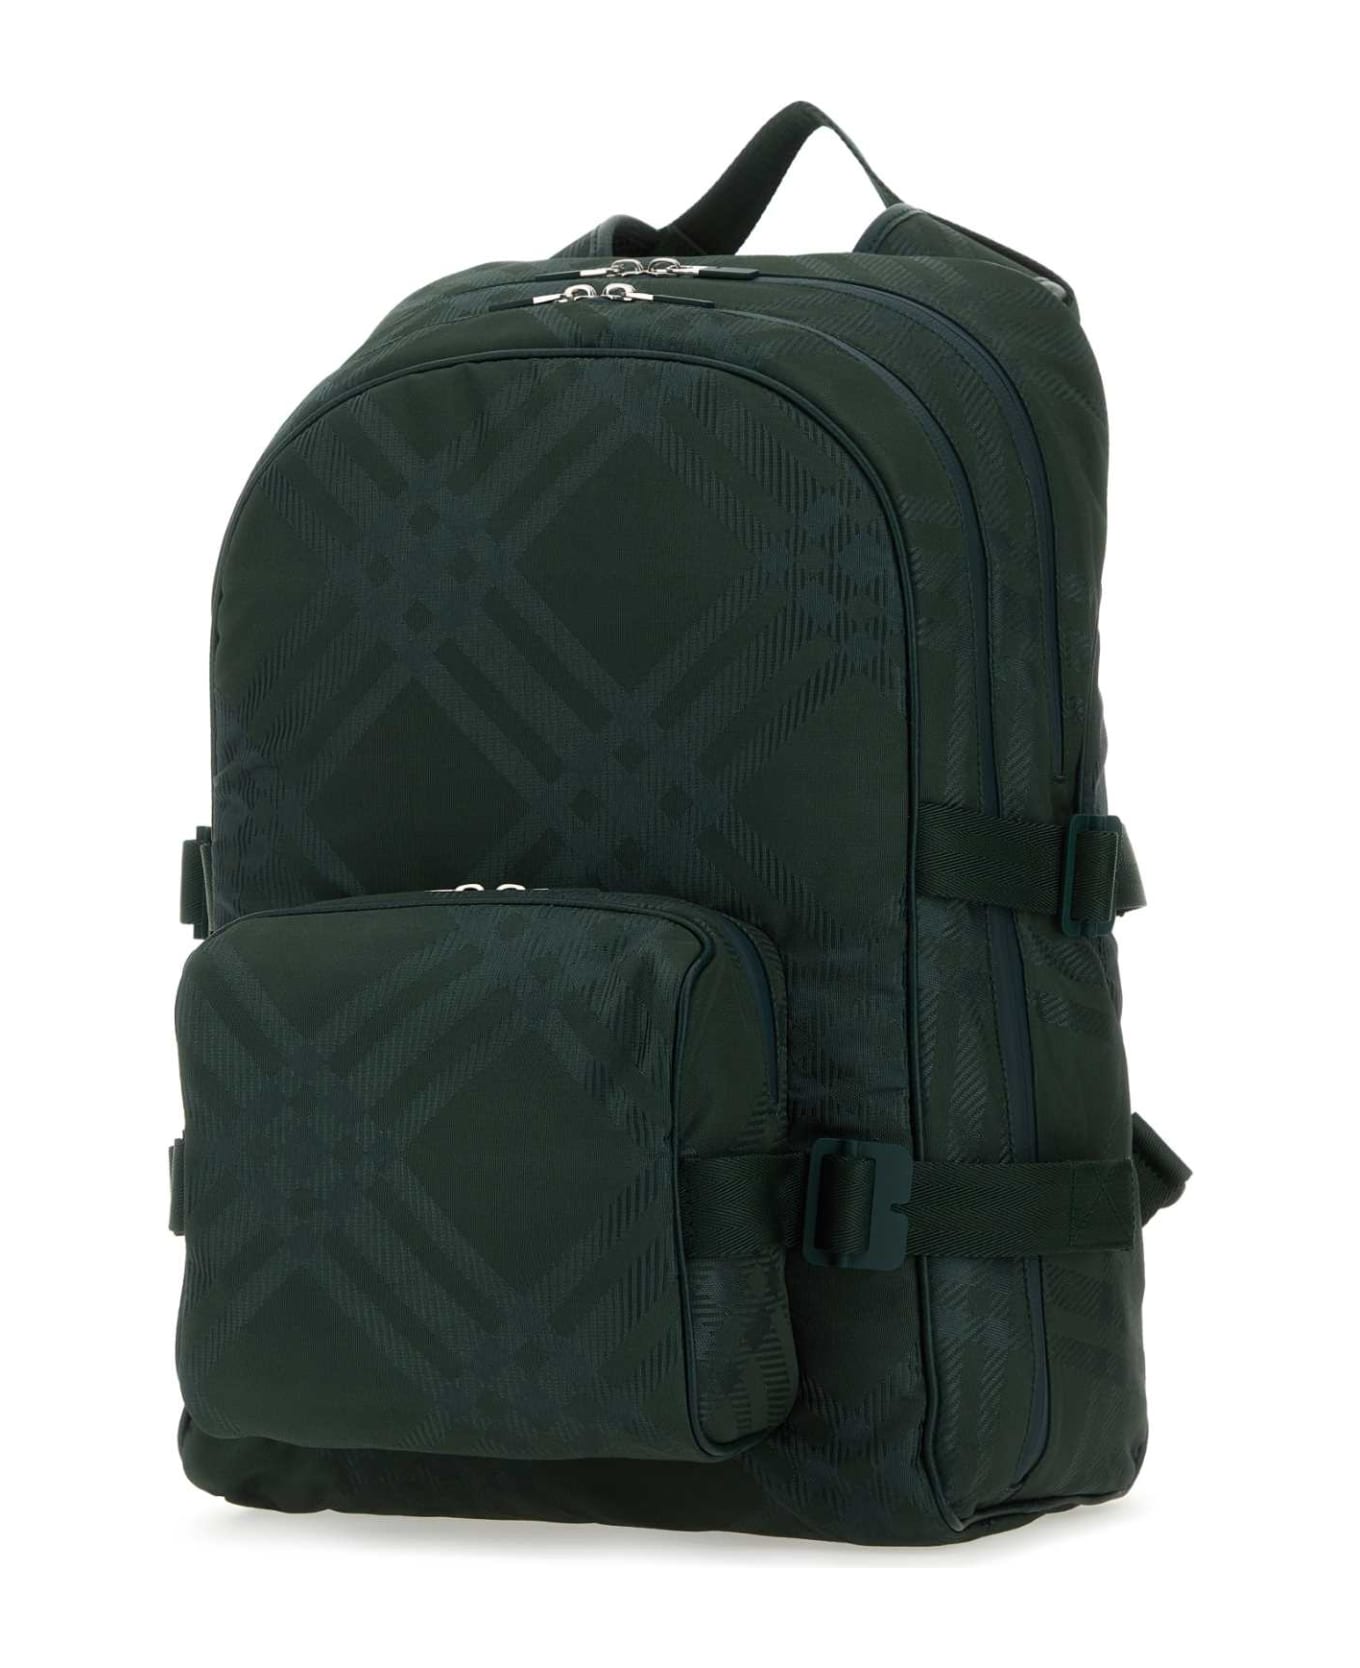 Burberry Bottle Green Nylon Blend Check Backpack - VINE